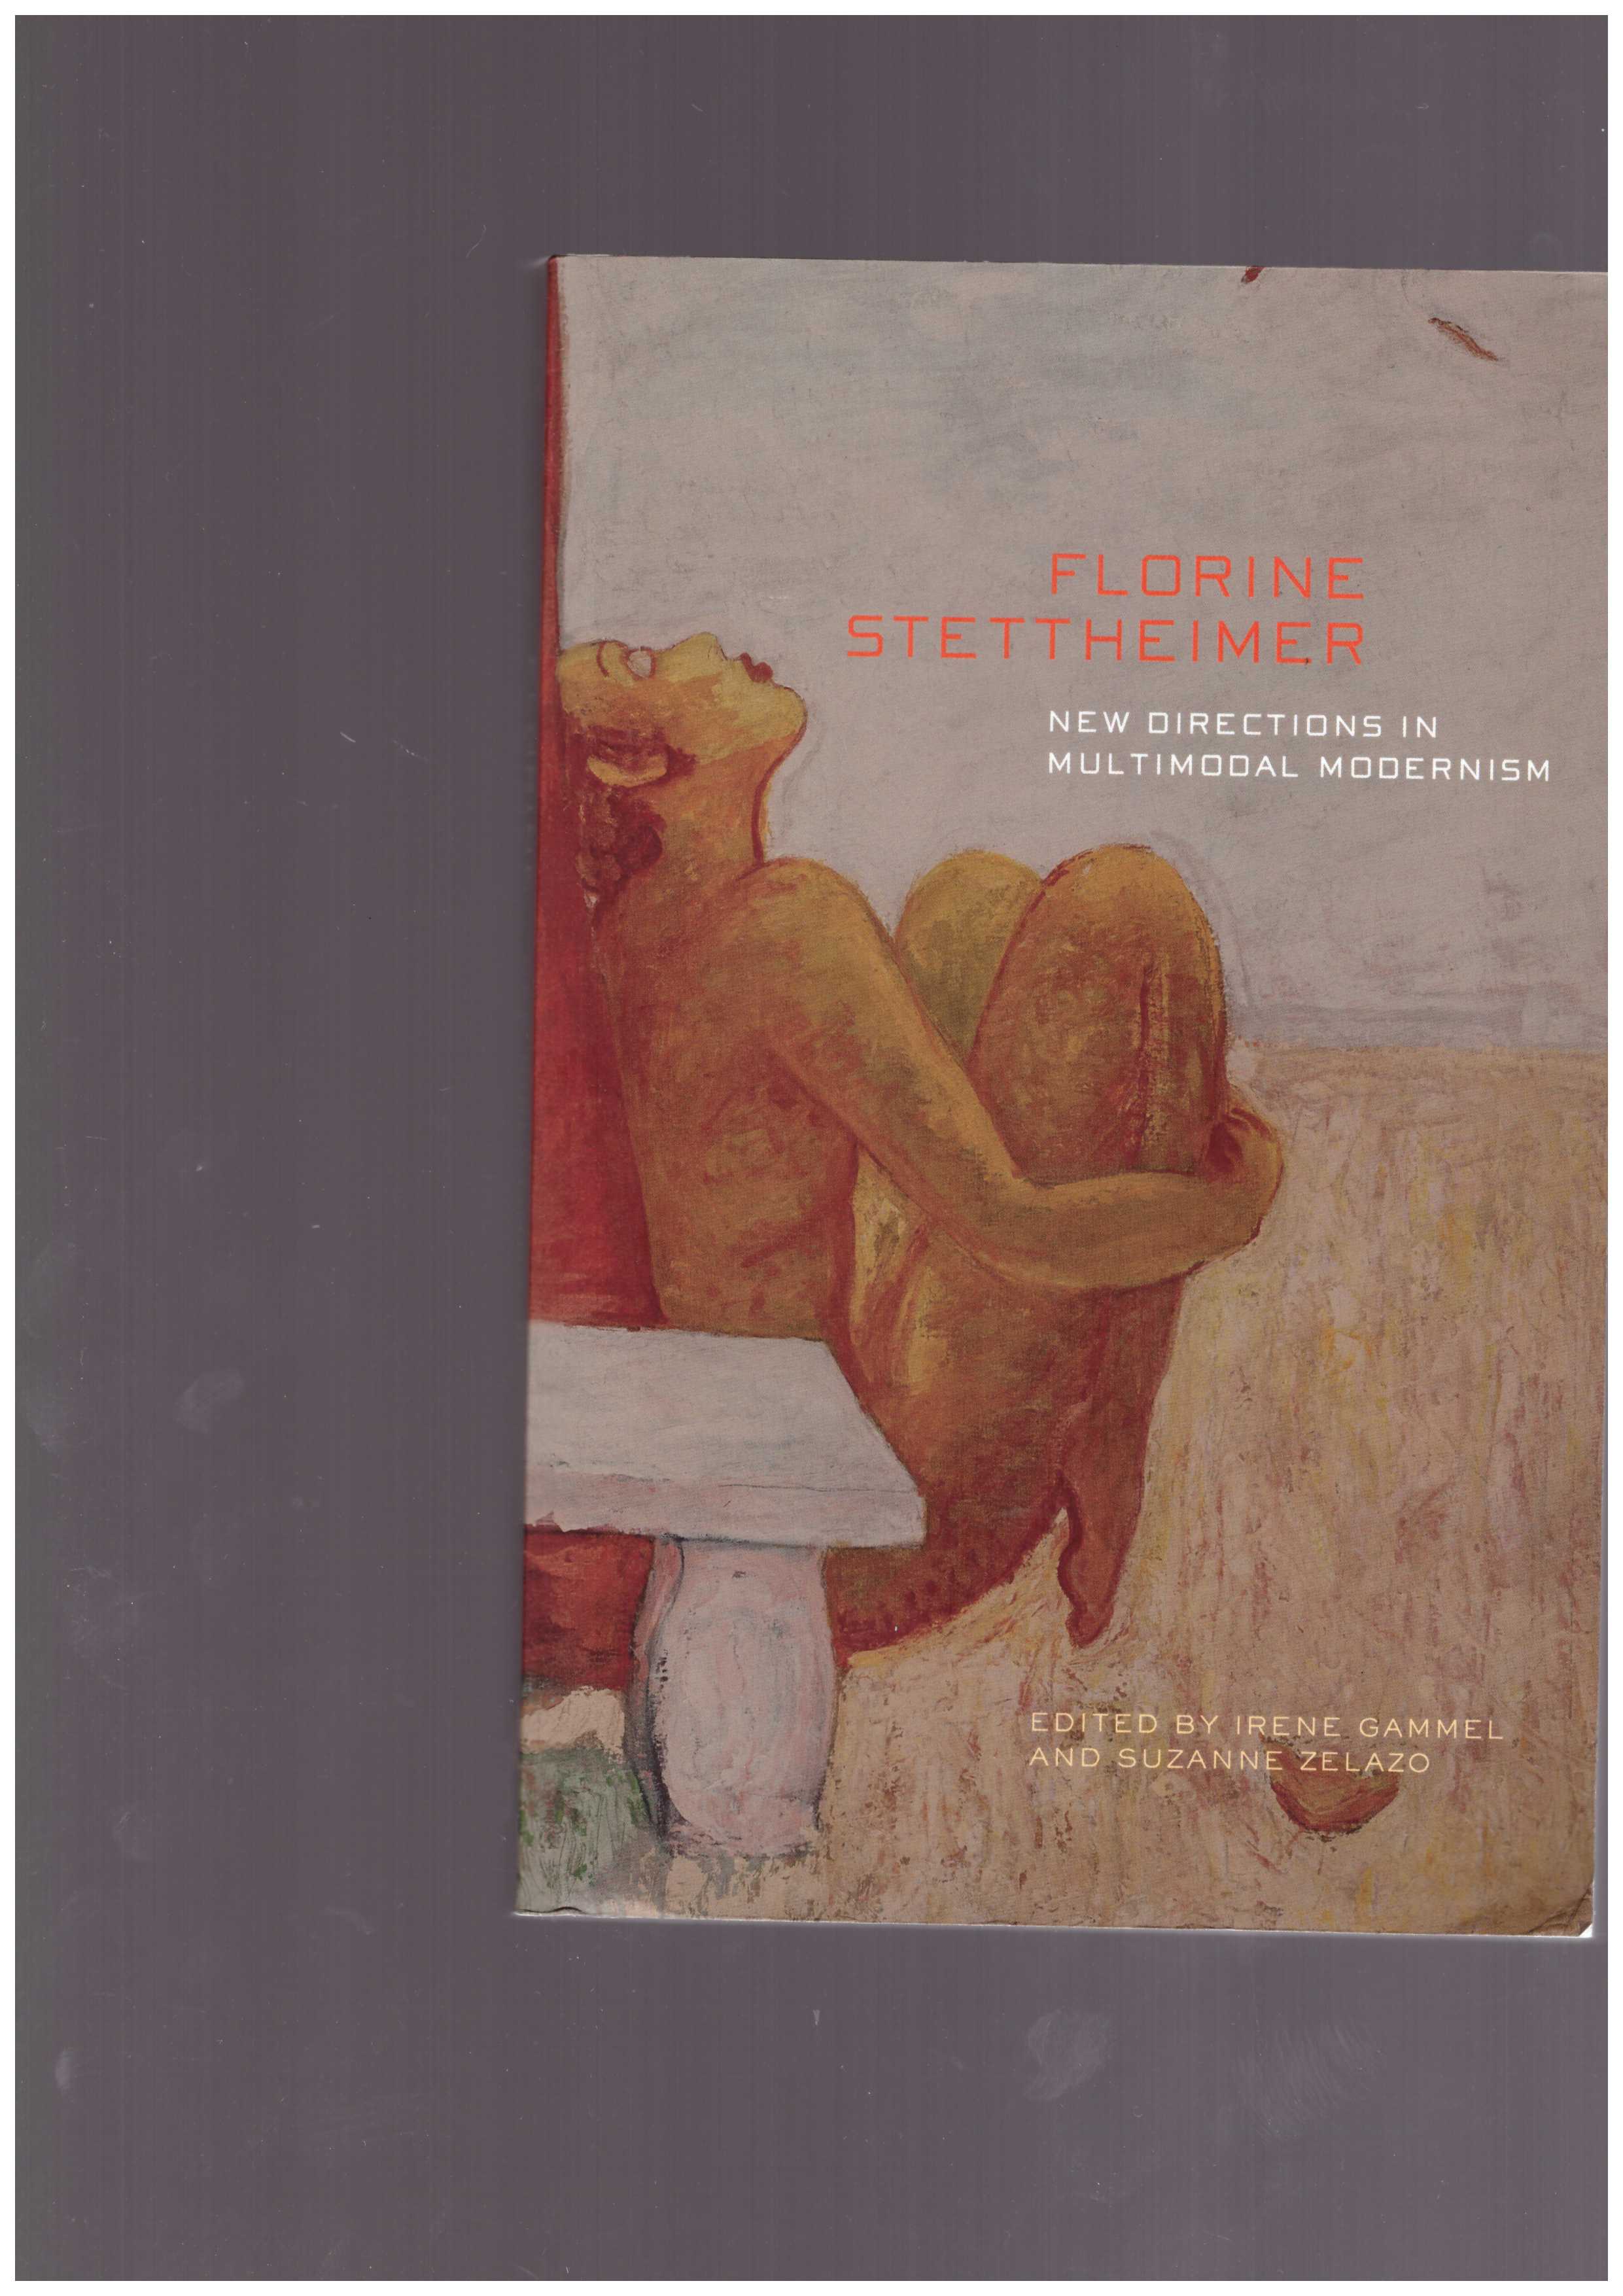 STETTHEIMER, Florine - Florine Stettheimer: New Directions in Multimodal Modernism